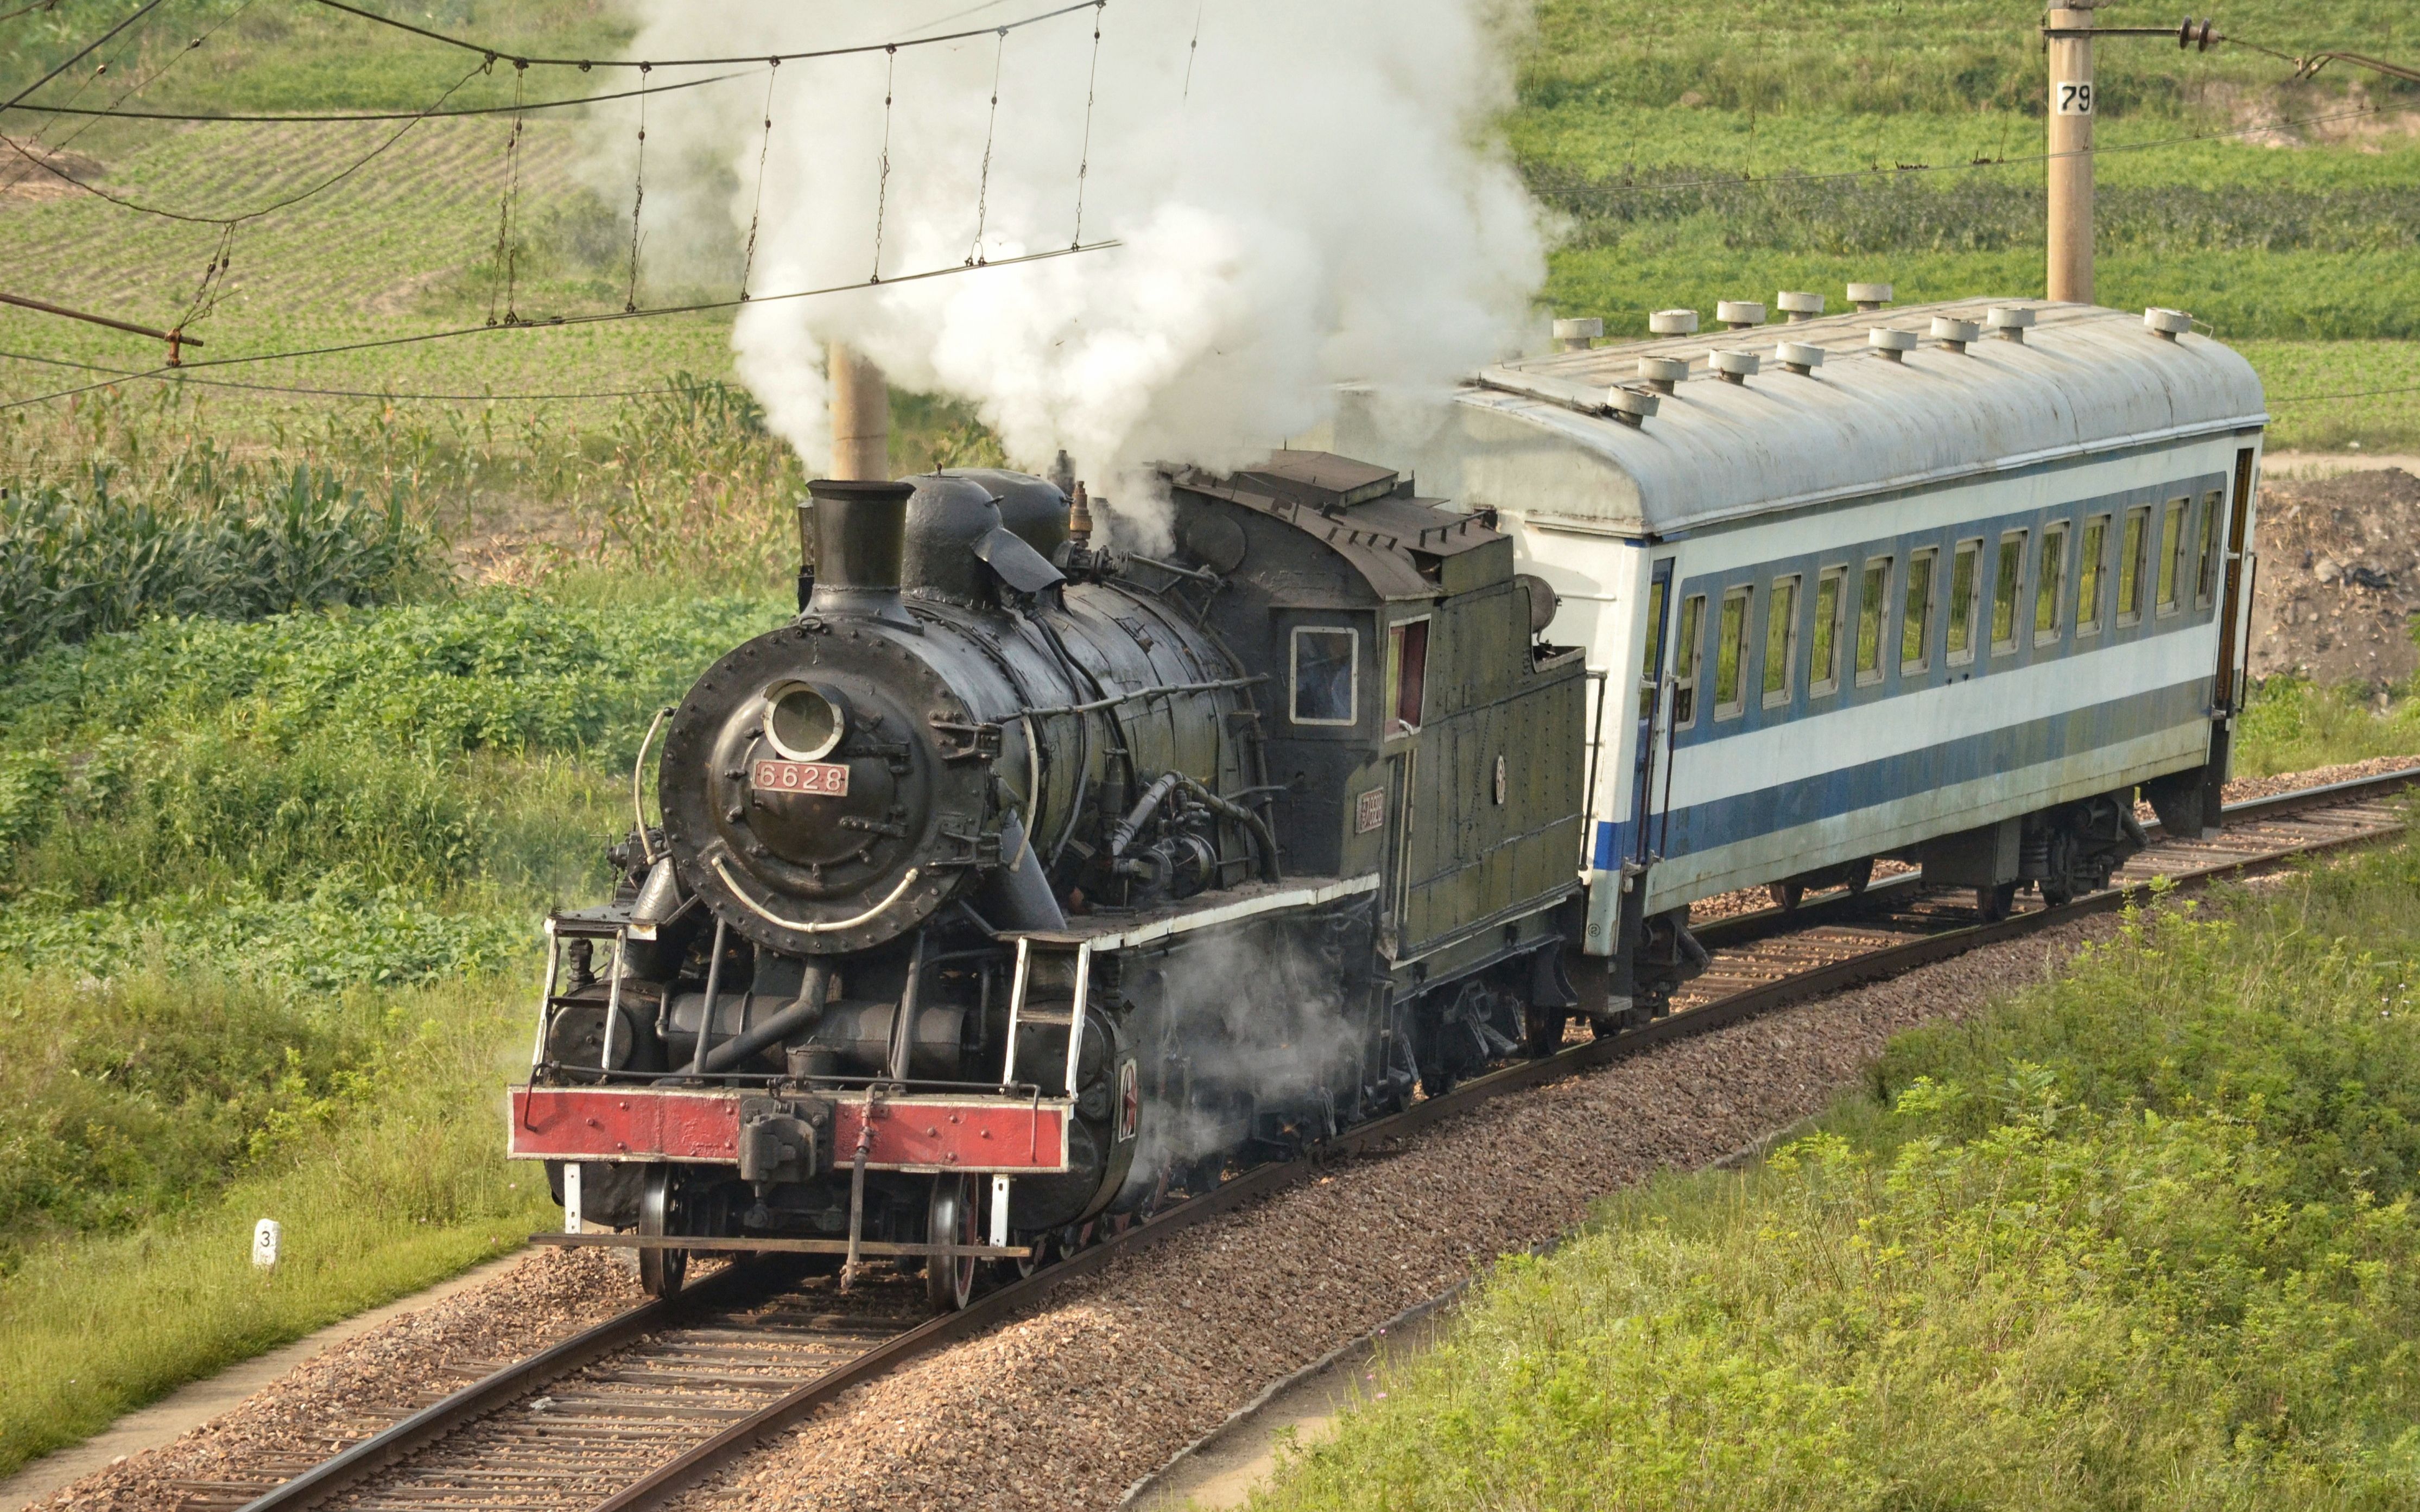 搬运视频世界铁路朝鲜铁道省6628号蒸汽机车中国铁道部解放6型蒸汽